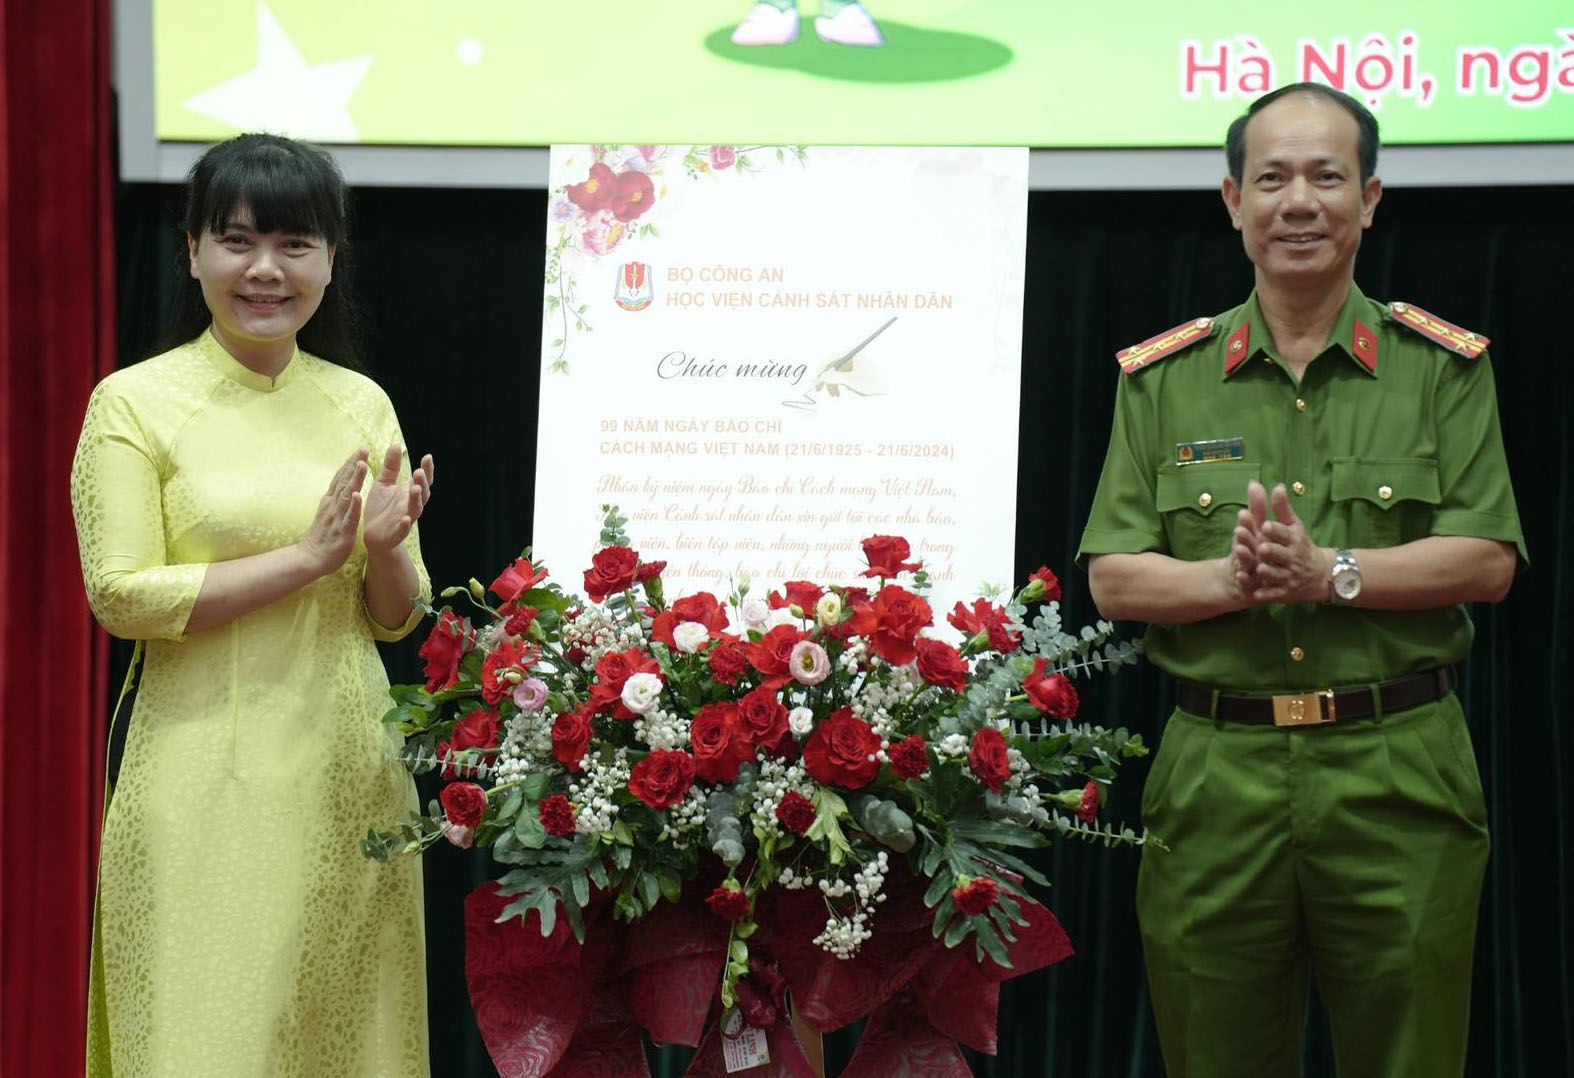 Học viện Cảnh sát nhân dân trao lẵng hoa chúc mừng báo Thiếu niên Tiền phong và Nhi đồng trong dịp ngày Báo chí cách mạng Việt Nam.